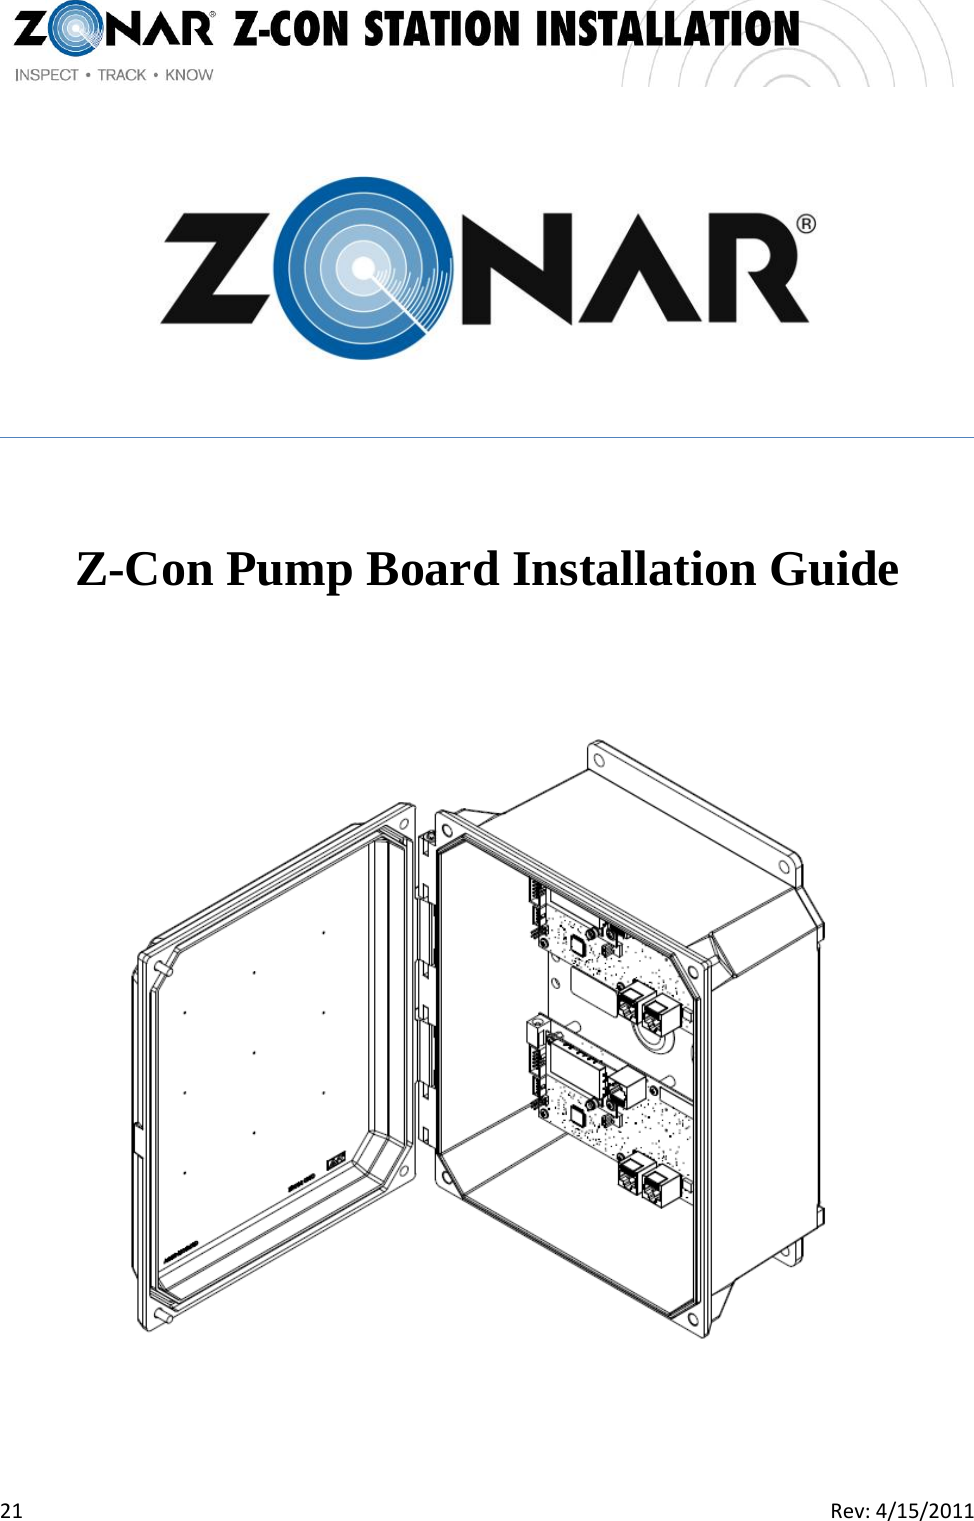   21  Rev:4/15/2011     Z-Con Pump Board Installation Guide  